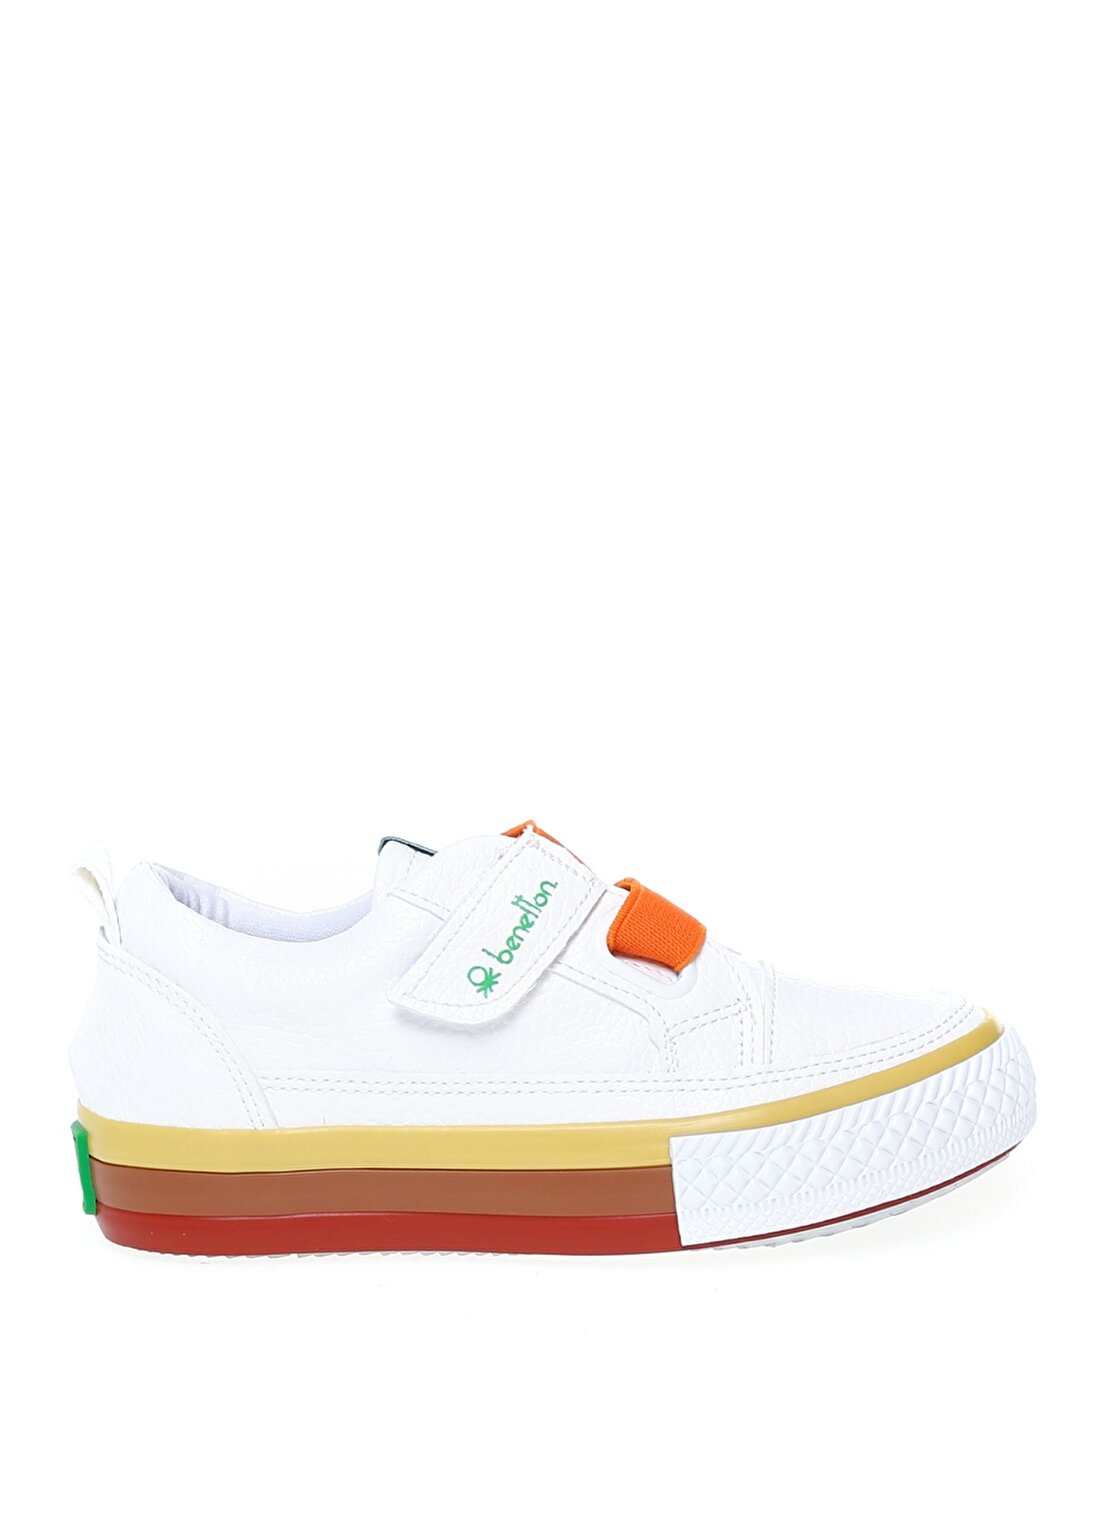 Benetton BN-30441 Beyaz Erkek Çocuk Yürüyüş Ayakkabısı